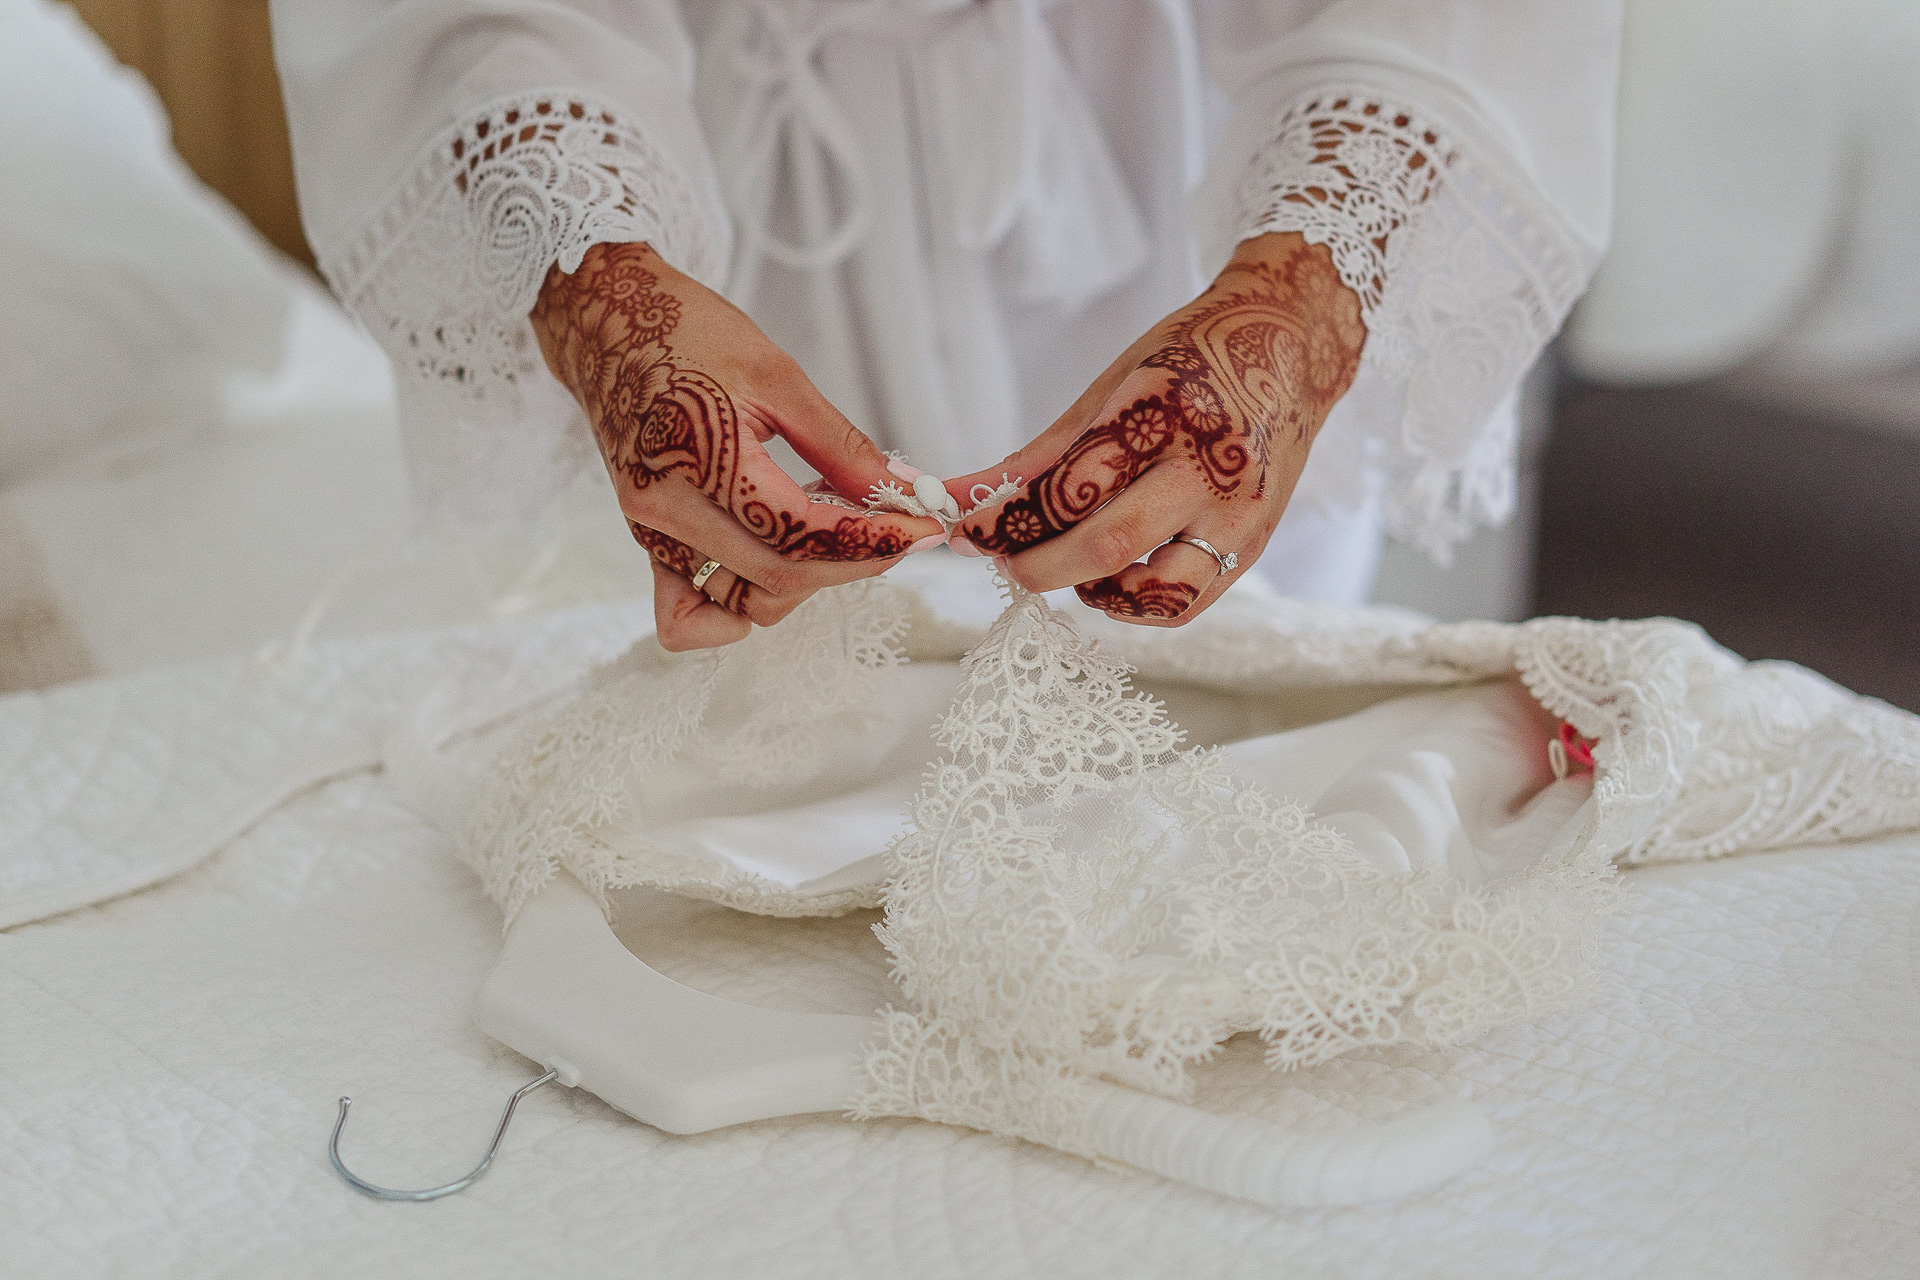 Hennaed hands undoing buttons on a wedding dress